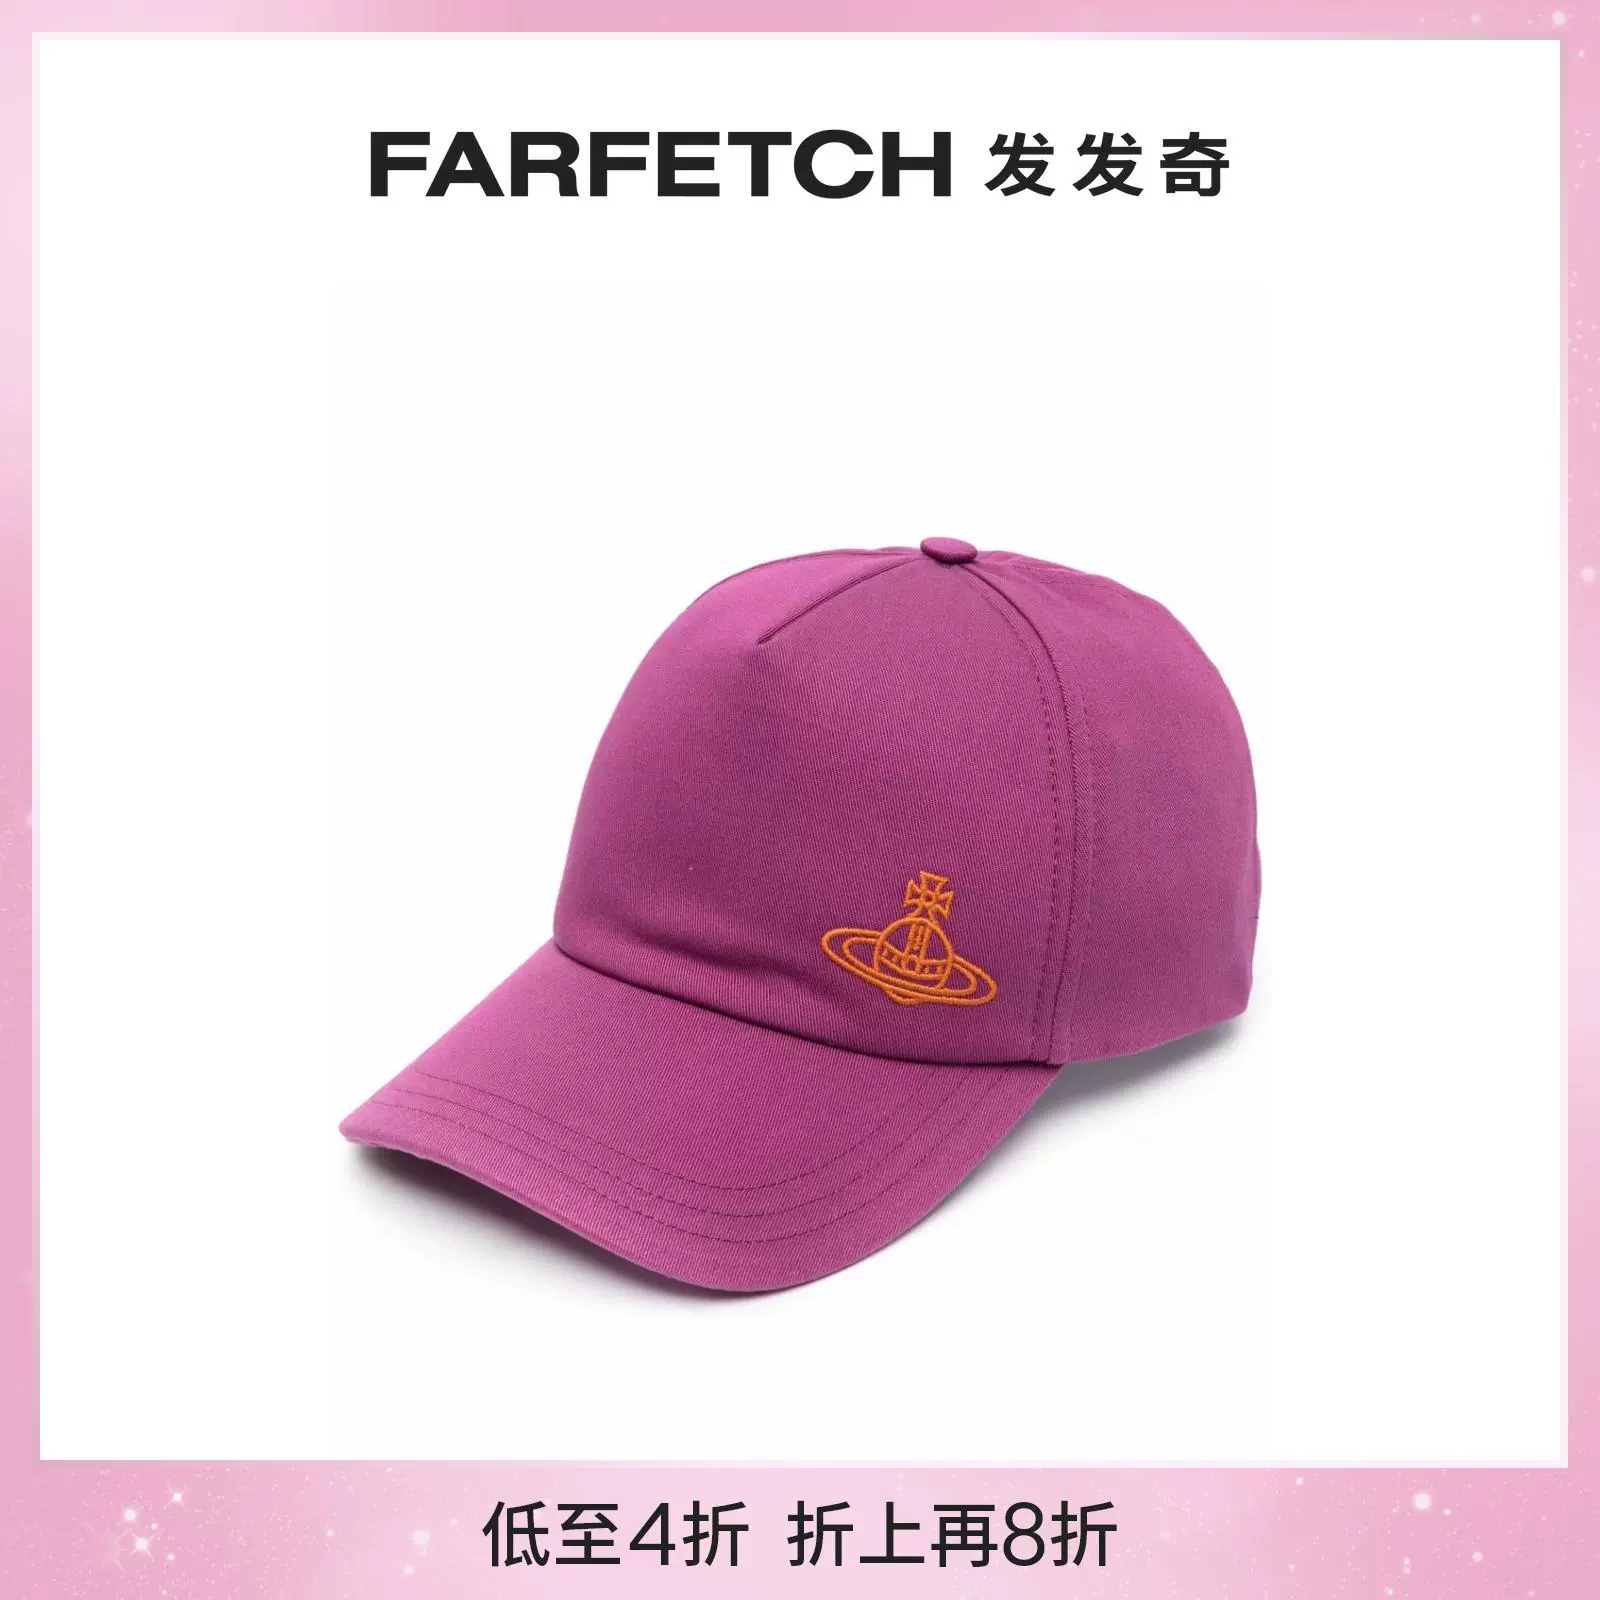 折扣]Vivienne Westwood女士logo刺绣棉棒球帽FARFETCH发发奇- Taobao